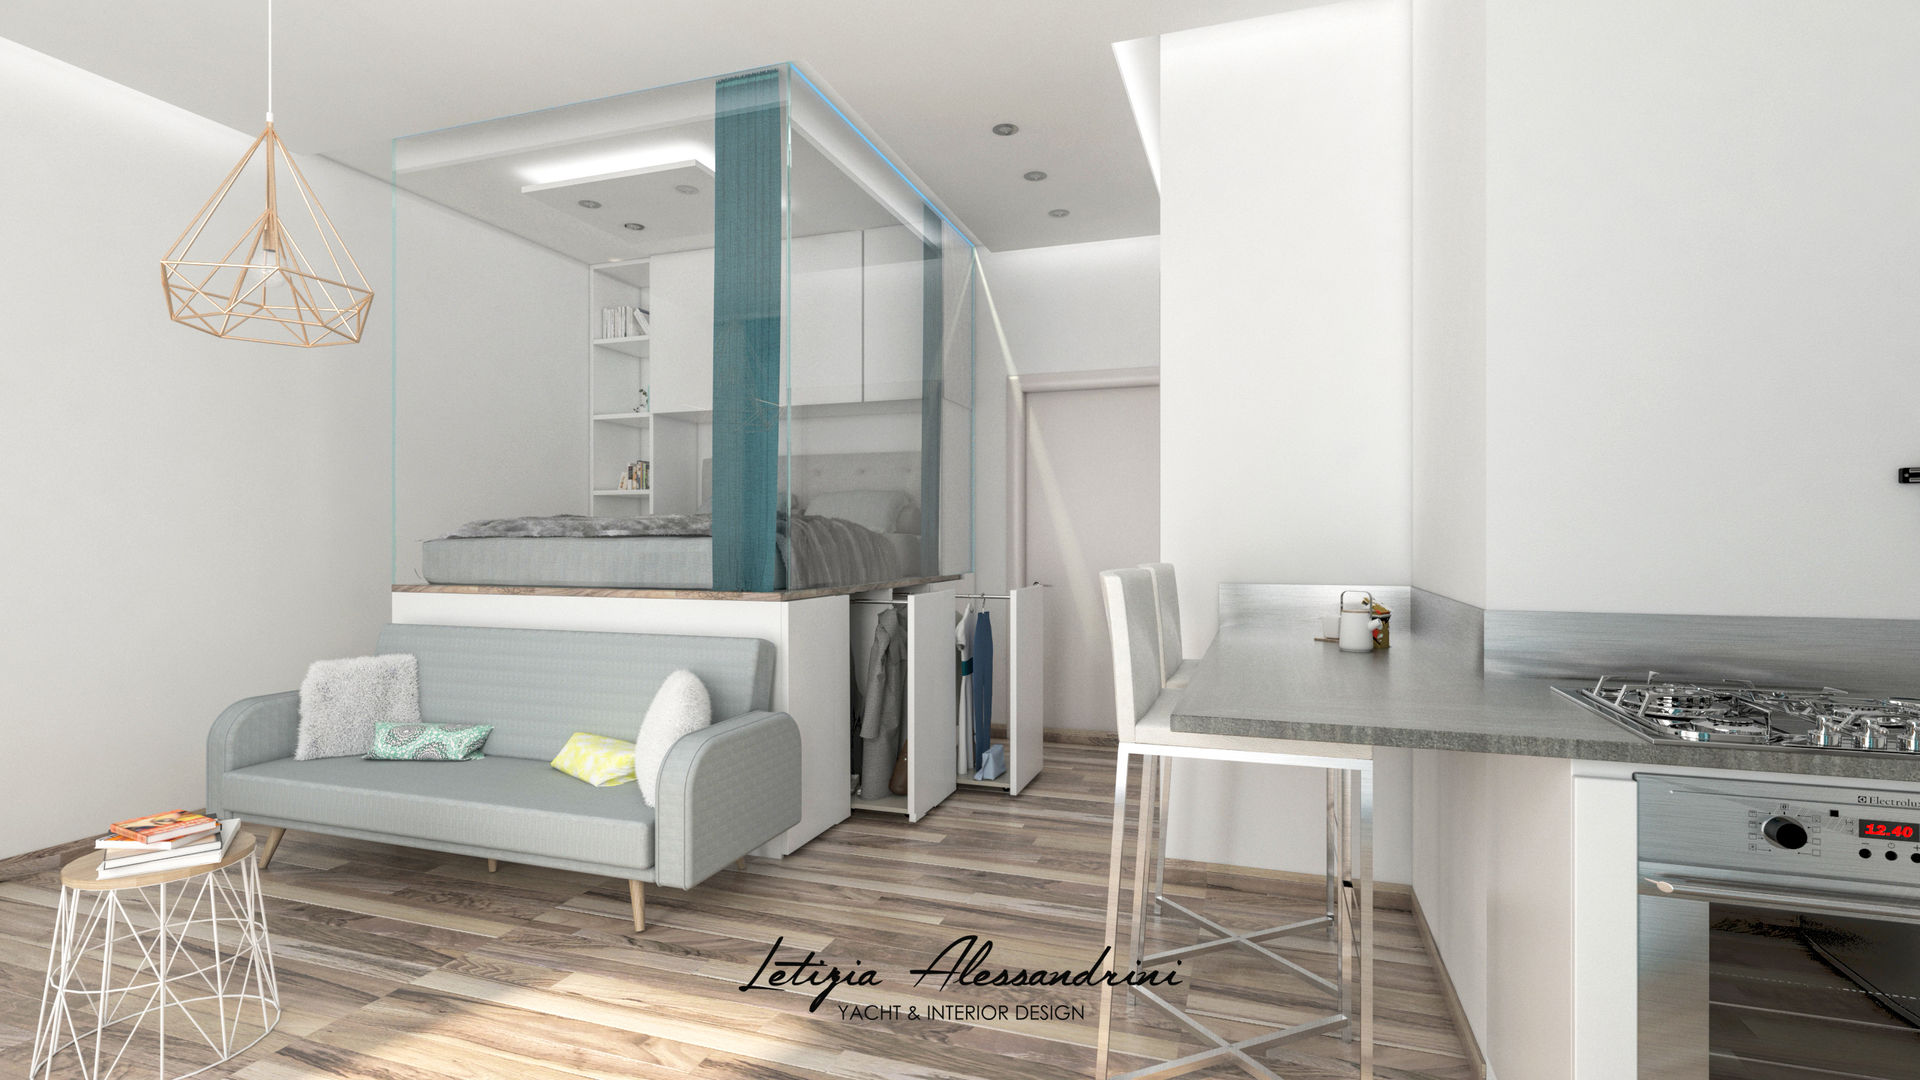 Monolocale a Milano, Letizia Alessandrini - Yacht & Interior Design Letizia Alessandrini - Yacht & Interior Design Salas de estar modernas